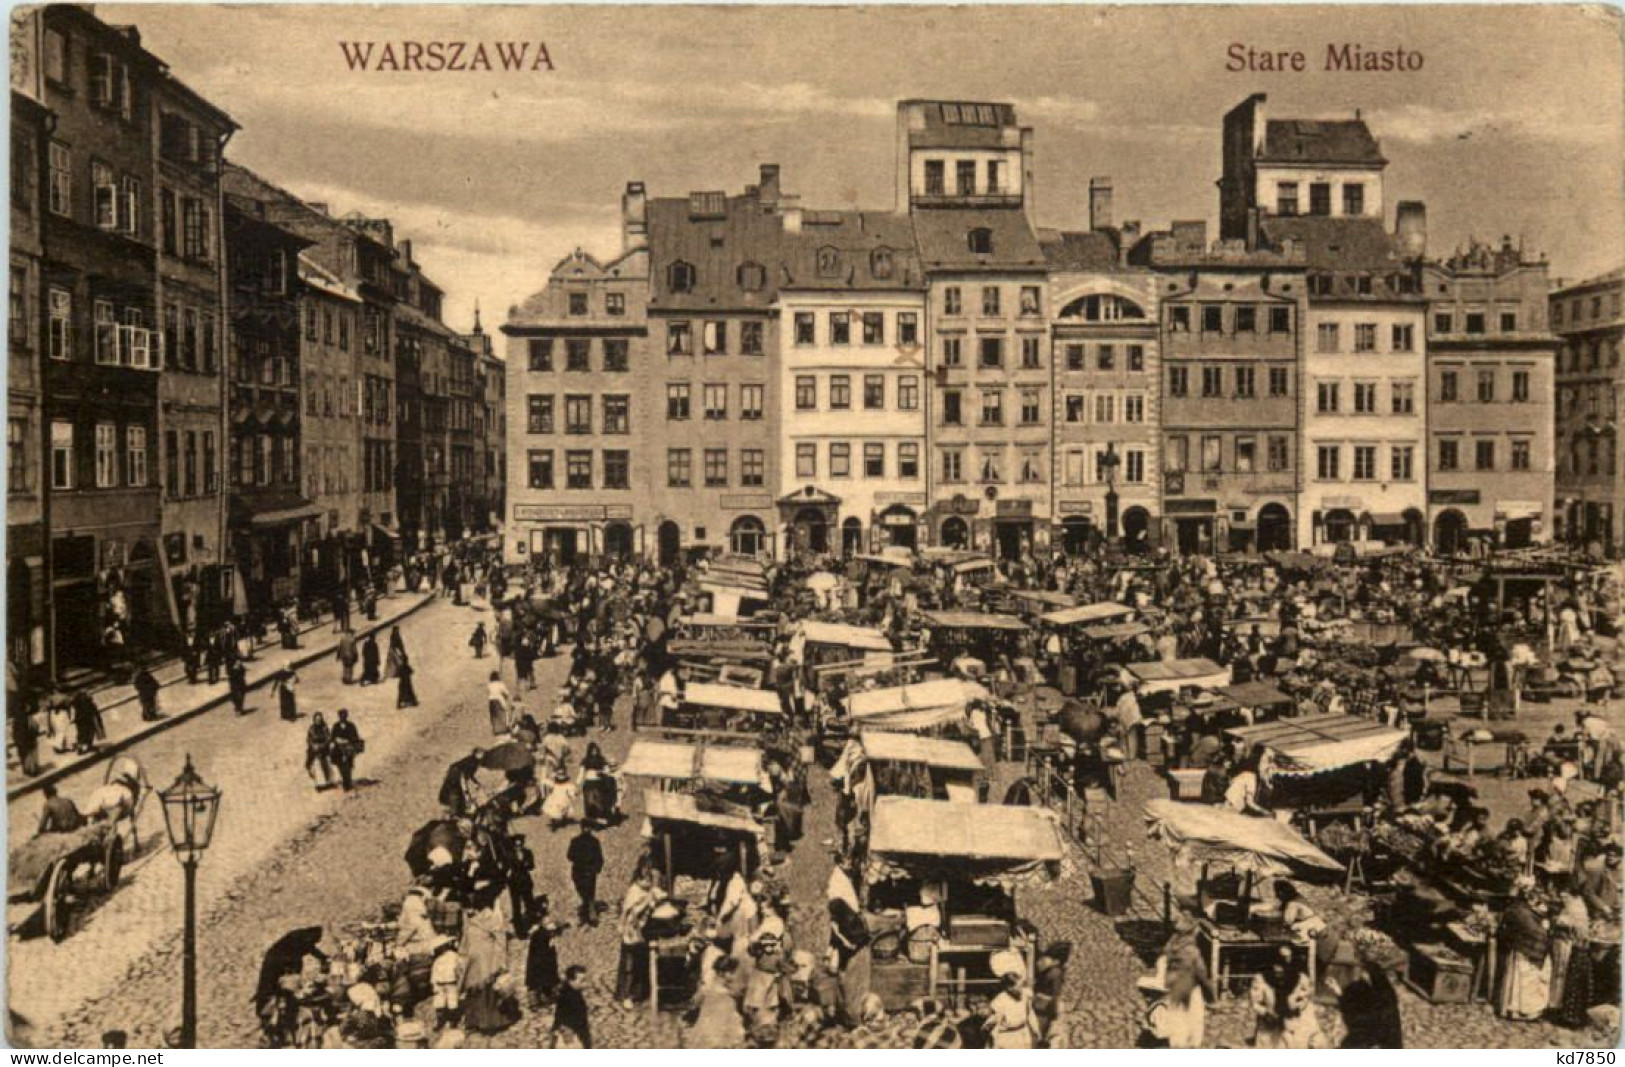 Warszawa - Stare Miasto - Poland